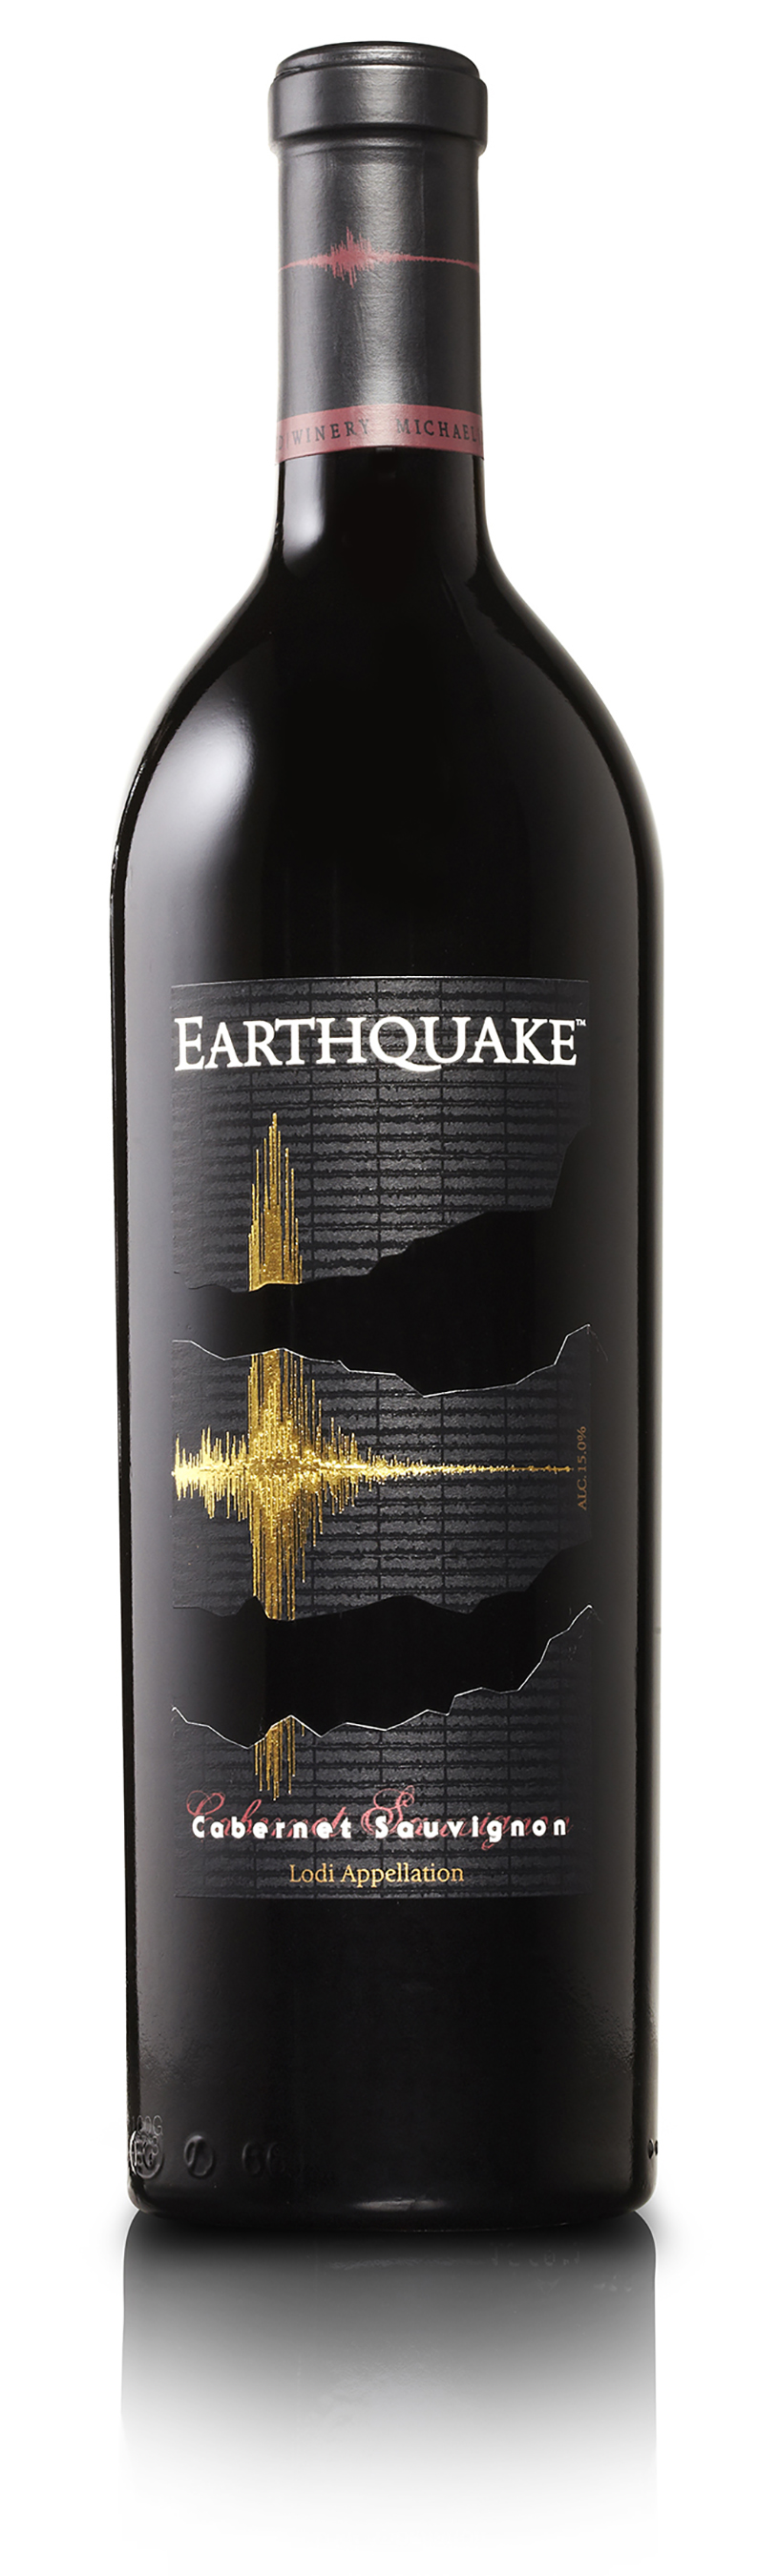 2012 Michael David Winery Earthquake Cabernet Sauvignon - click image for full description